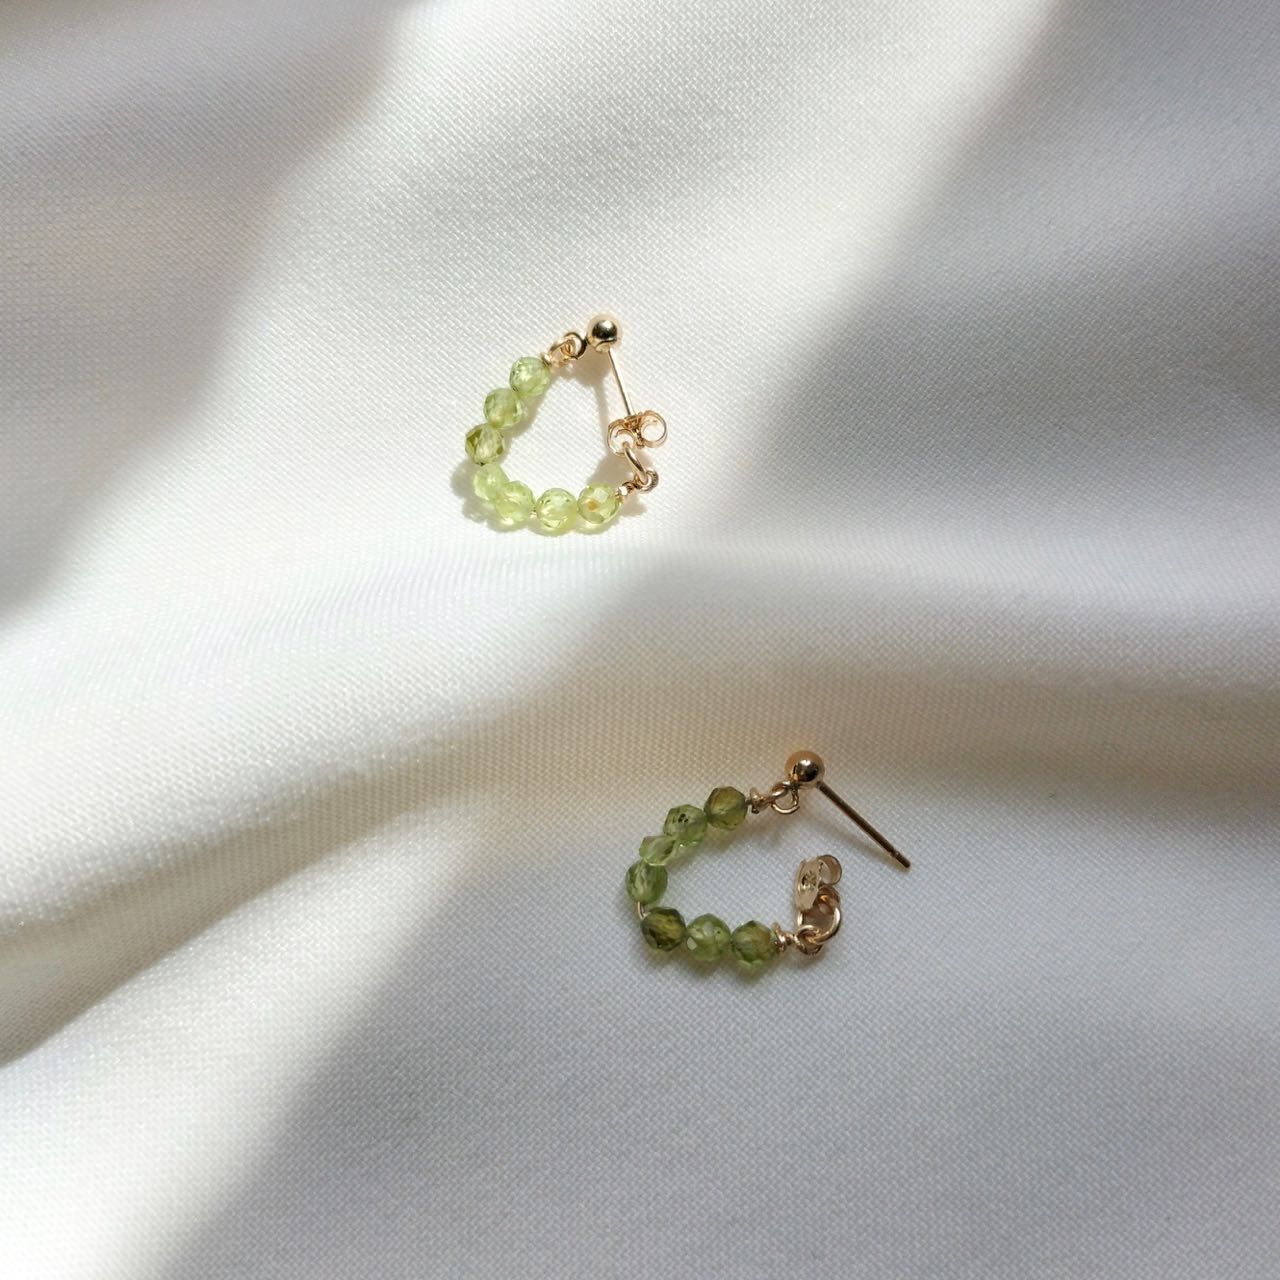 August birthstone earrings - peridot